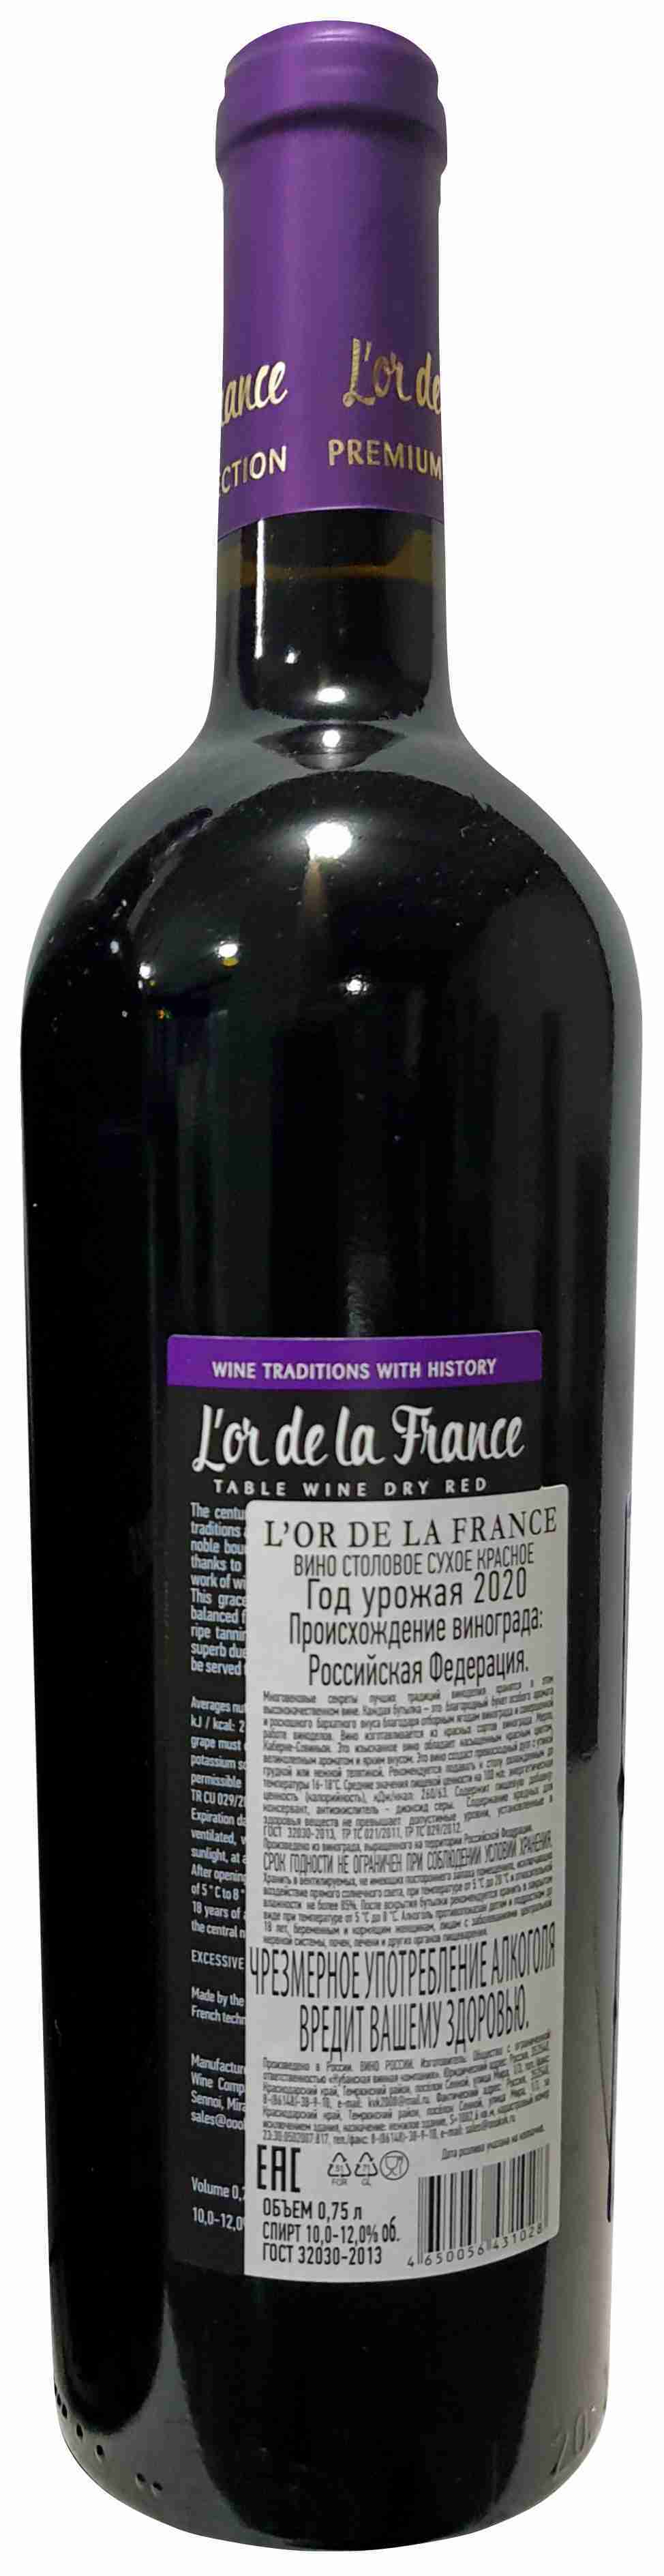 Вино из винограда мерло. Lor de la France вино. Вино л видам столовое красное. Вино Chiloe Chile Syrah Merlot. Lor de la France вино цена.